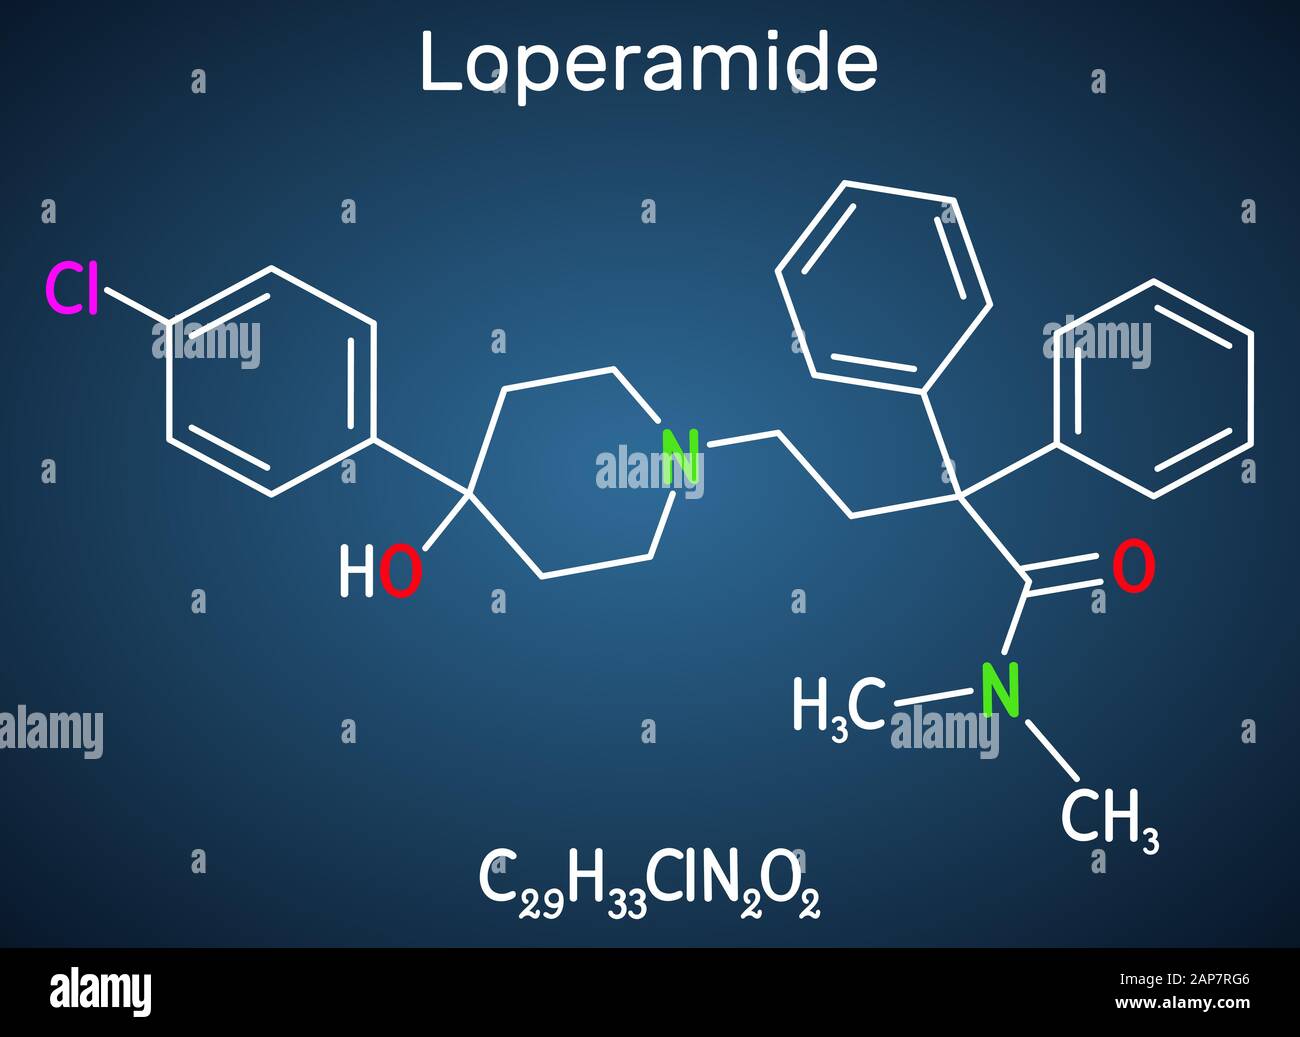 Loperamide, molecola antidiarroica sintetica ad azione prolungata. Formula chimica strutturale sullo sfondo blu scuro. Illustrazione del vettore Illustrazione Vettoriale